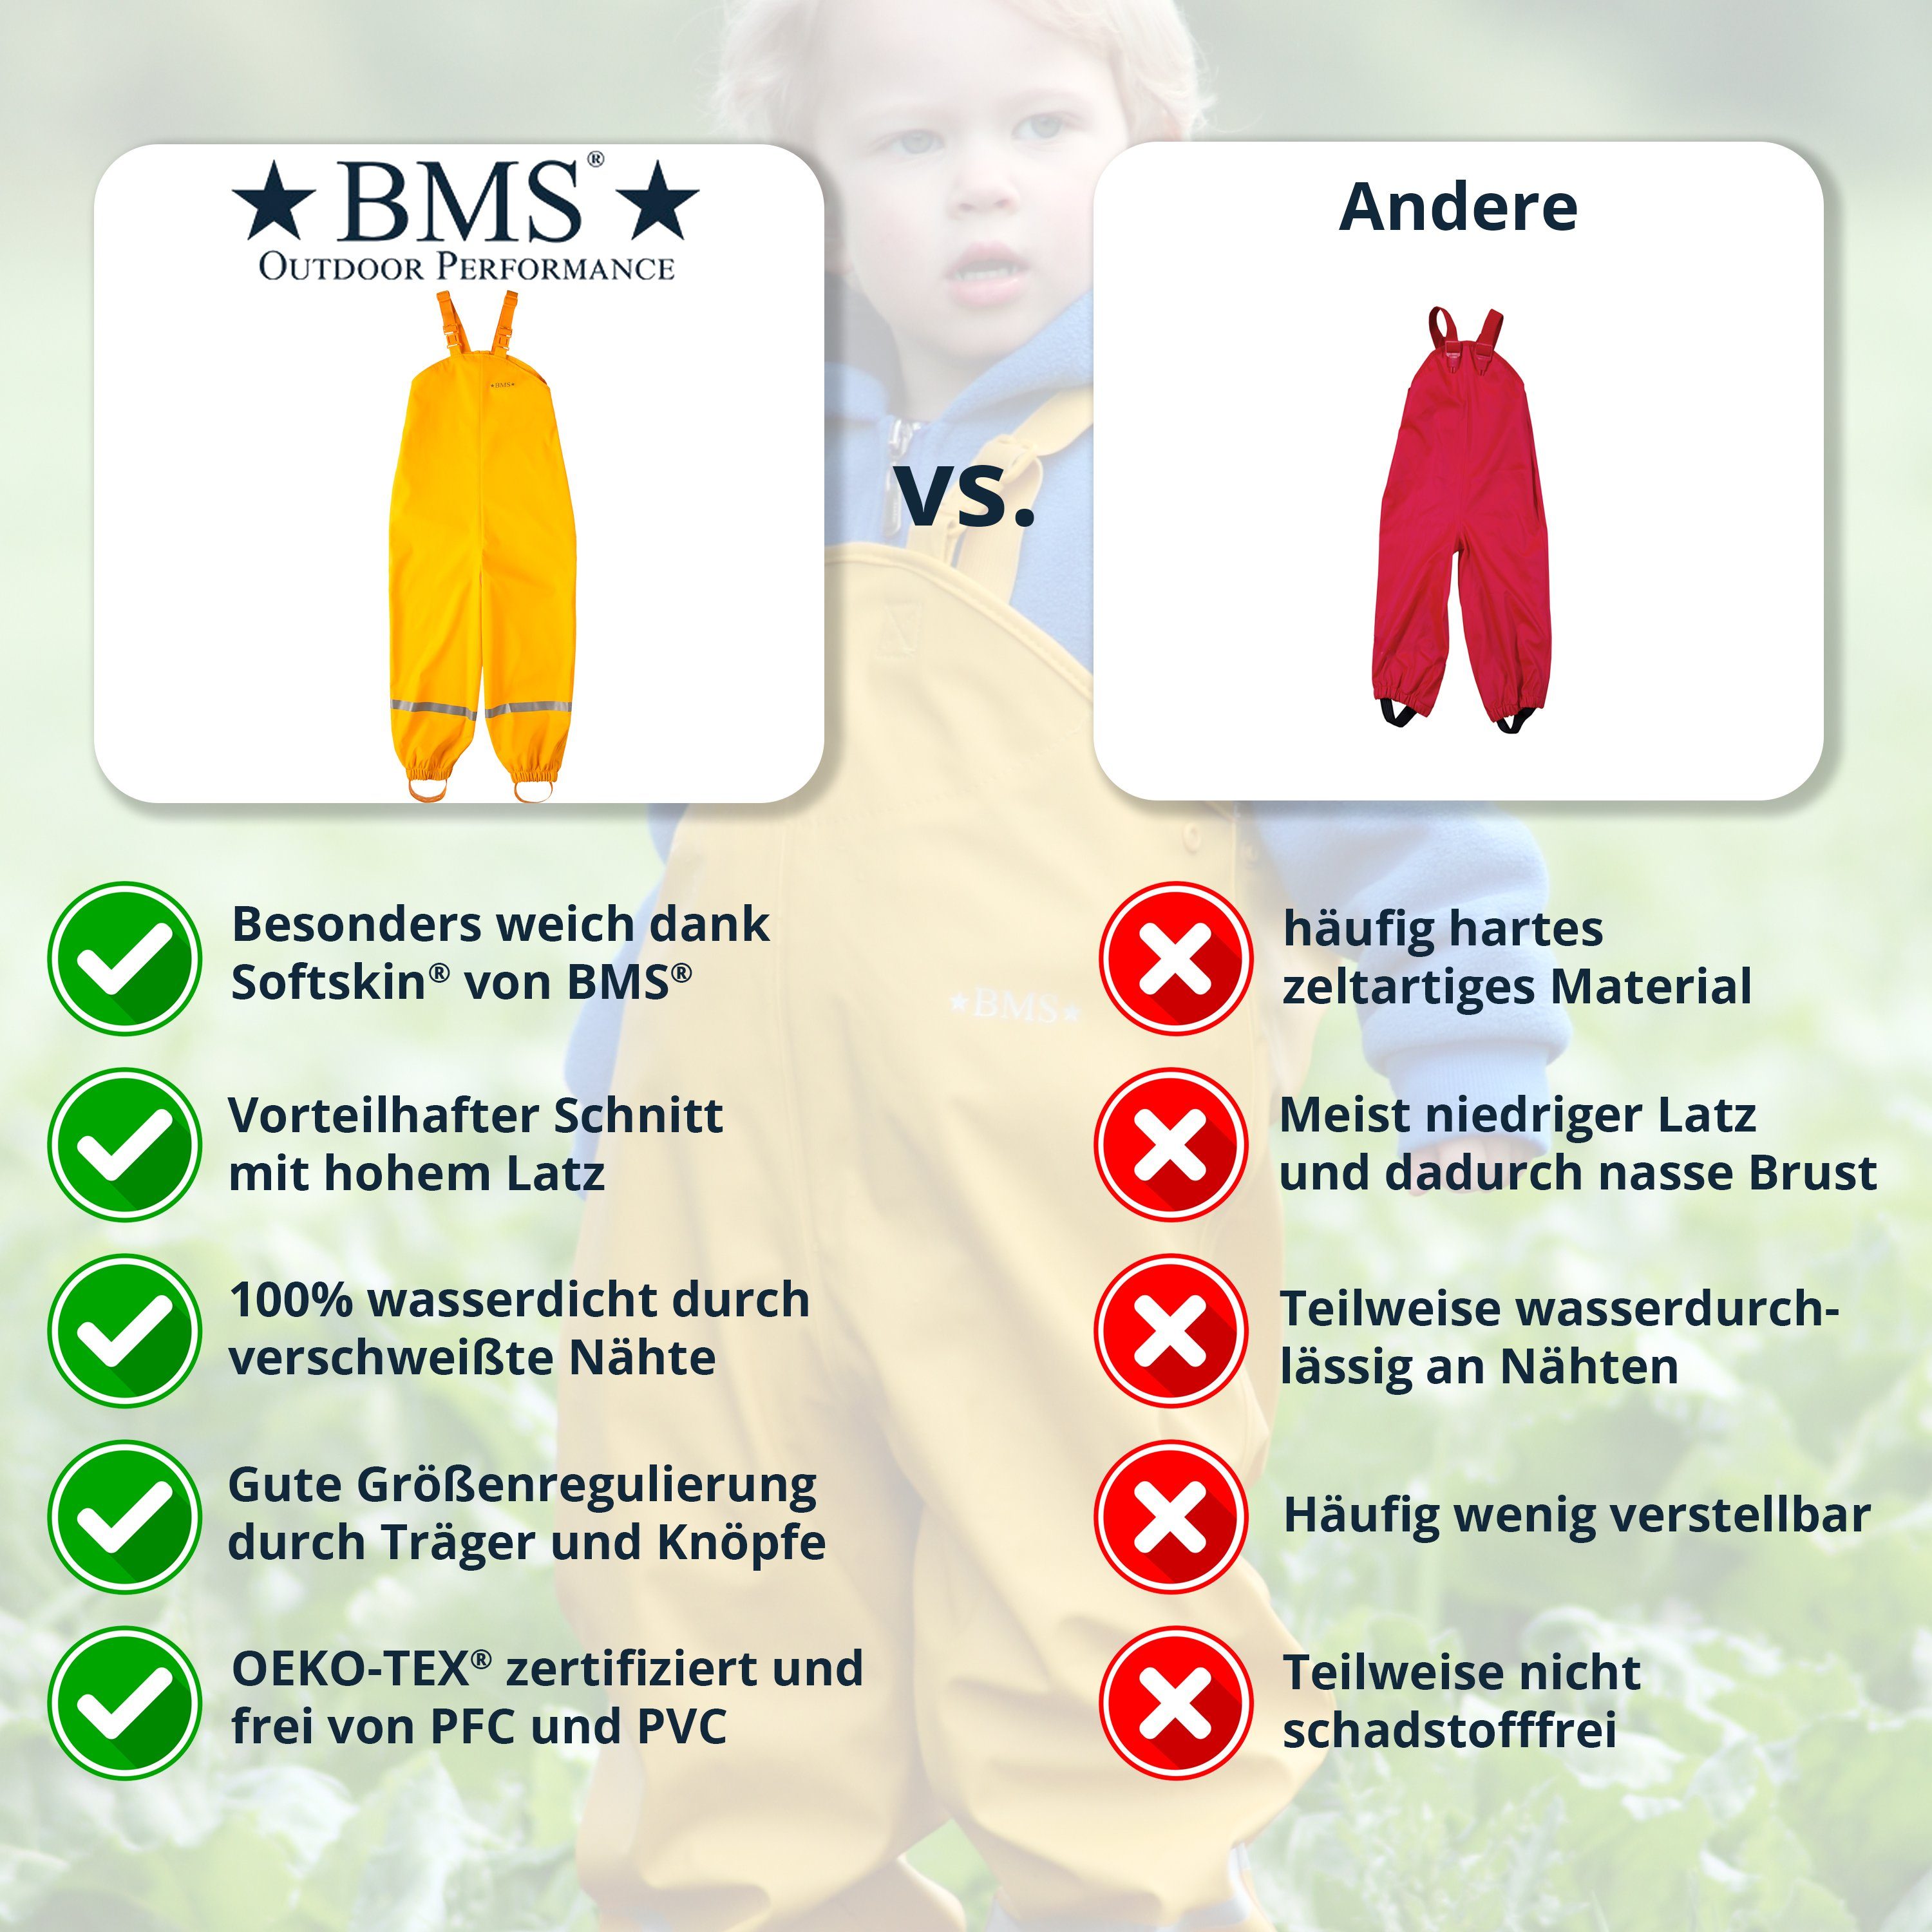 BMS Regen- Matschhose (1-tlg) 100% wasserdicht - Regenhose - Buddelhose BMS gelb und - Matschlatzhose